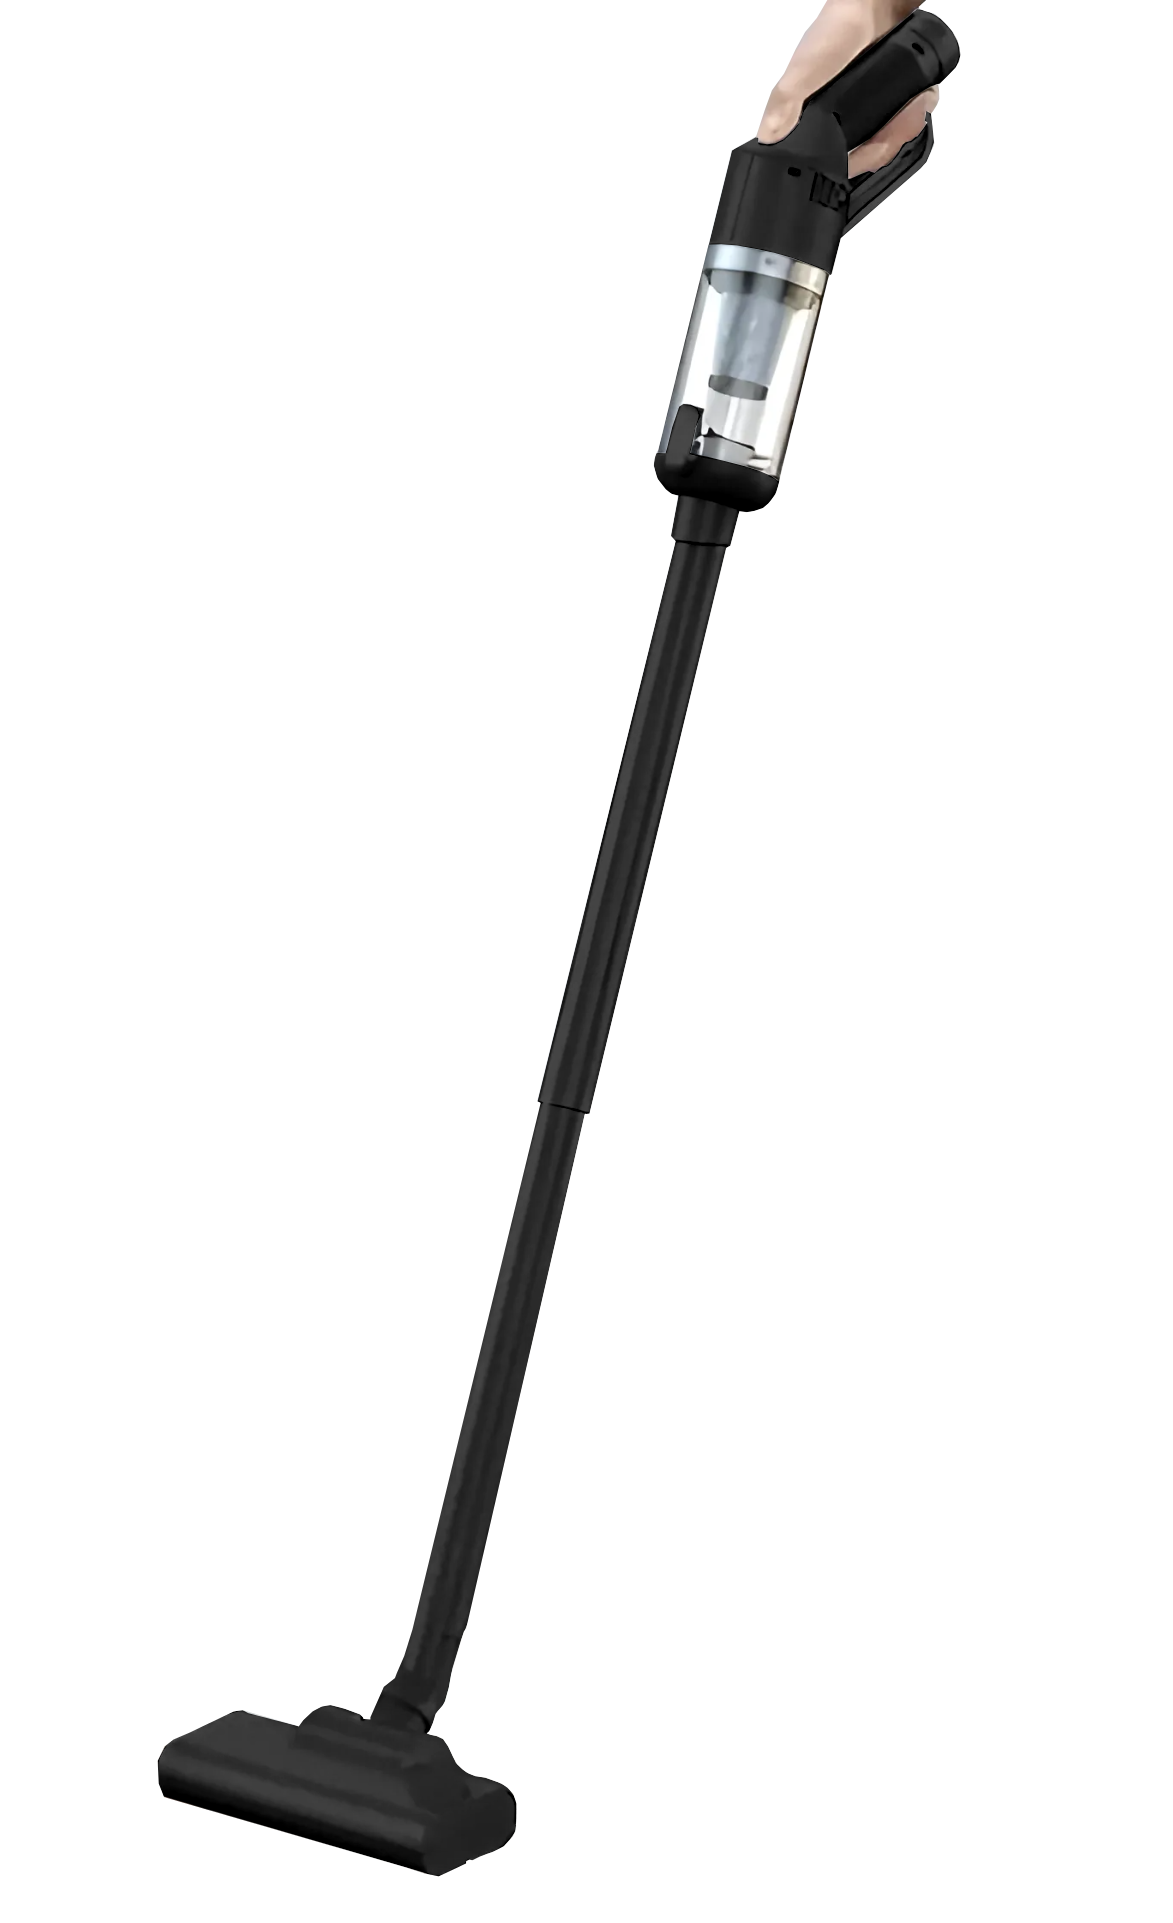 CARCAM Vacuum Cleaner LT-127 Black стилус carcam smart pencil id730 black